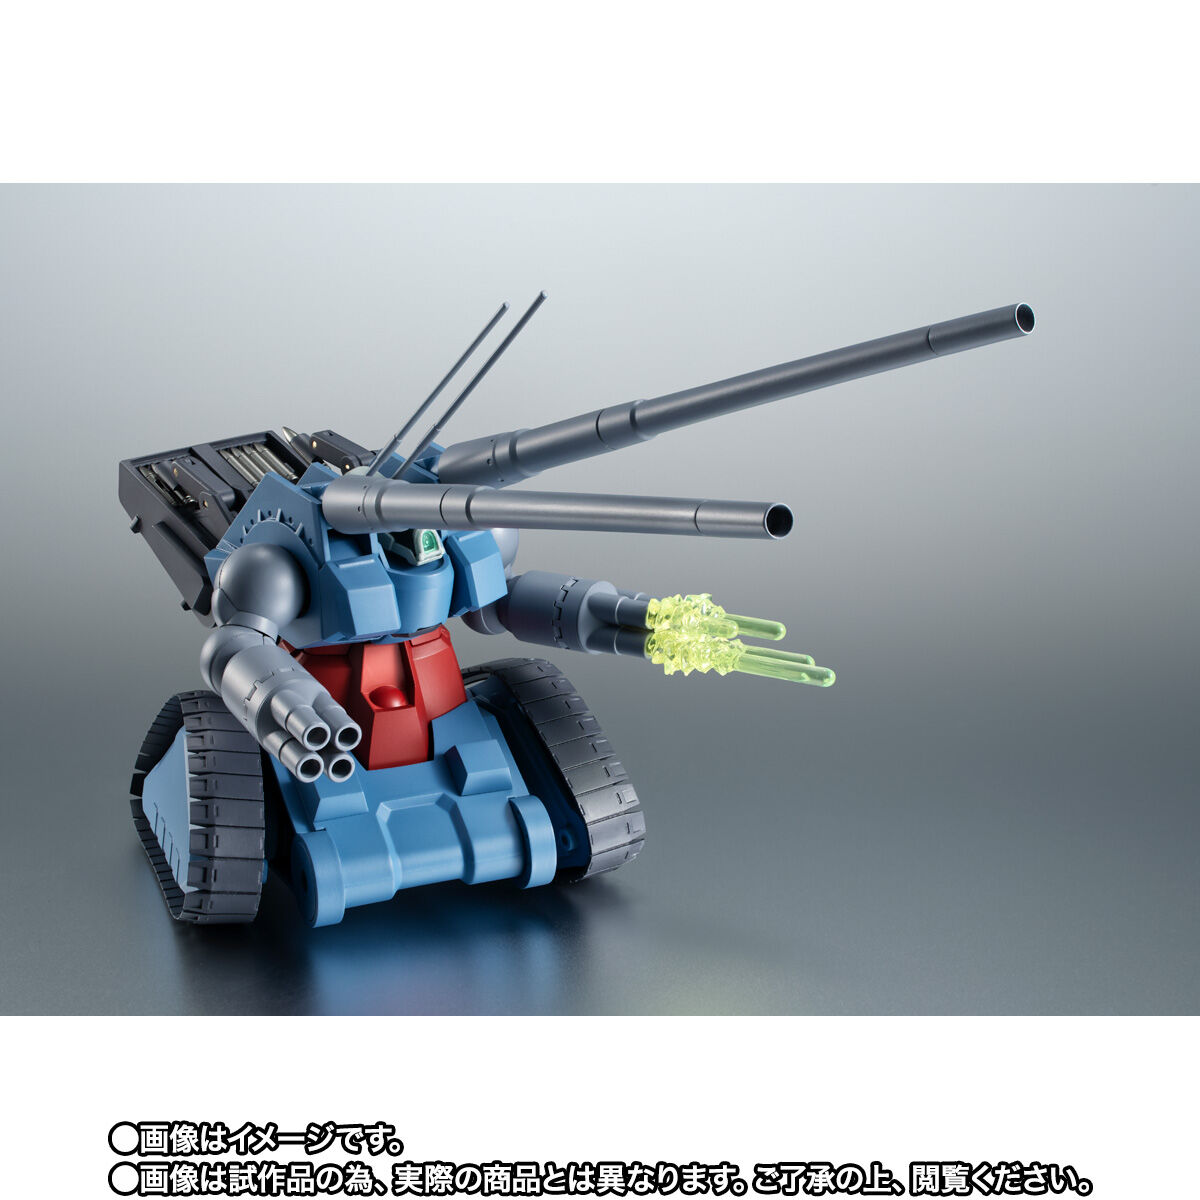 【限定販売】ROBOT魂〈SIDE MS〉『RX-75 量産型ガンタンク ver. A.N.I.M.E.』機動戦士ガンダム 第08MS小隊 可動フィギュア-006